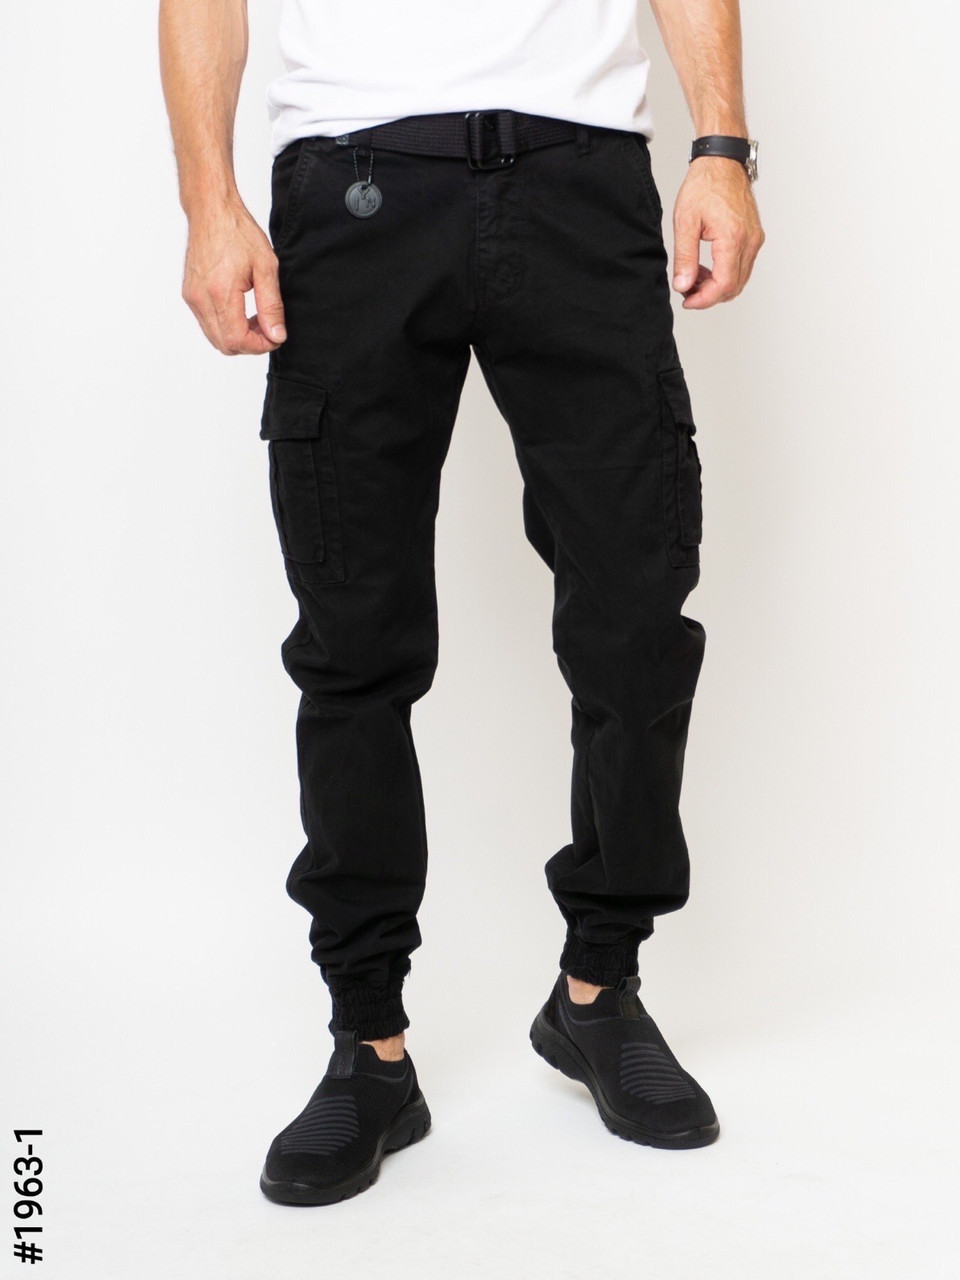 Чоловічі штани карго чорні з бічними кишенями, джогери на манжеті внизу є великі розміри батали